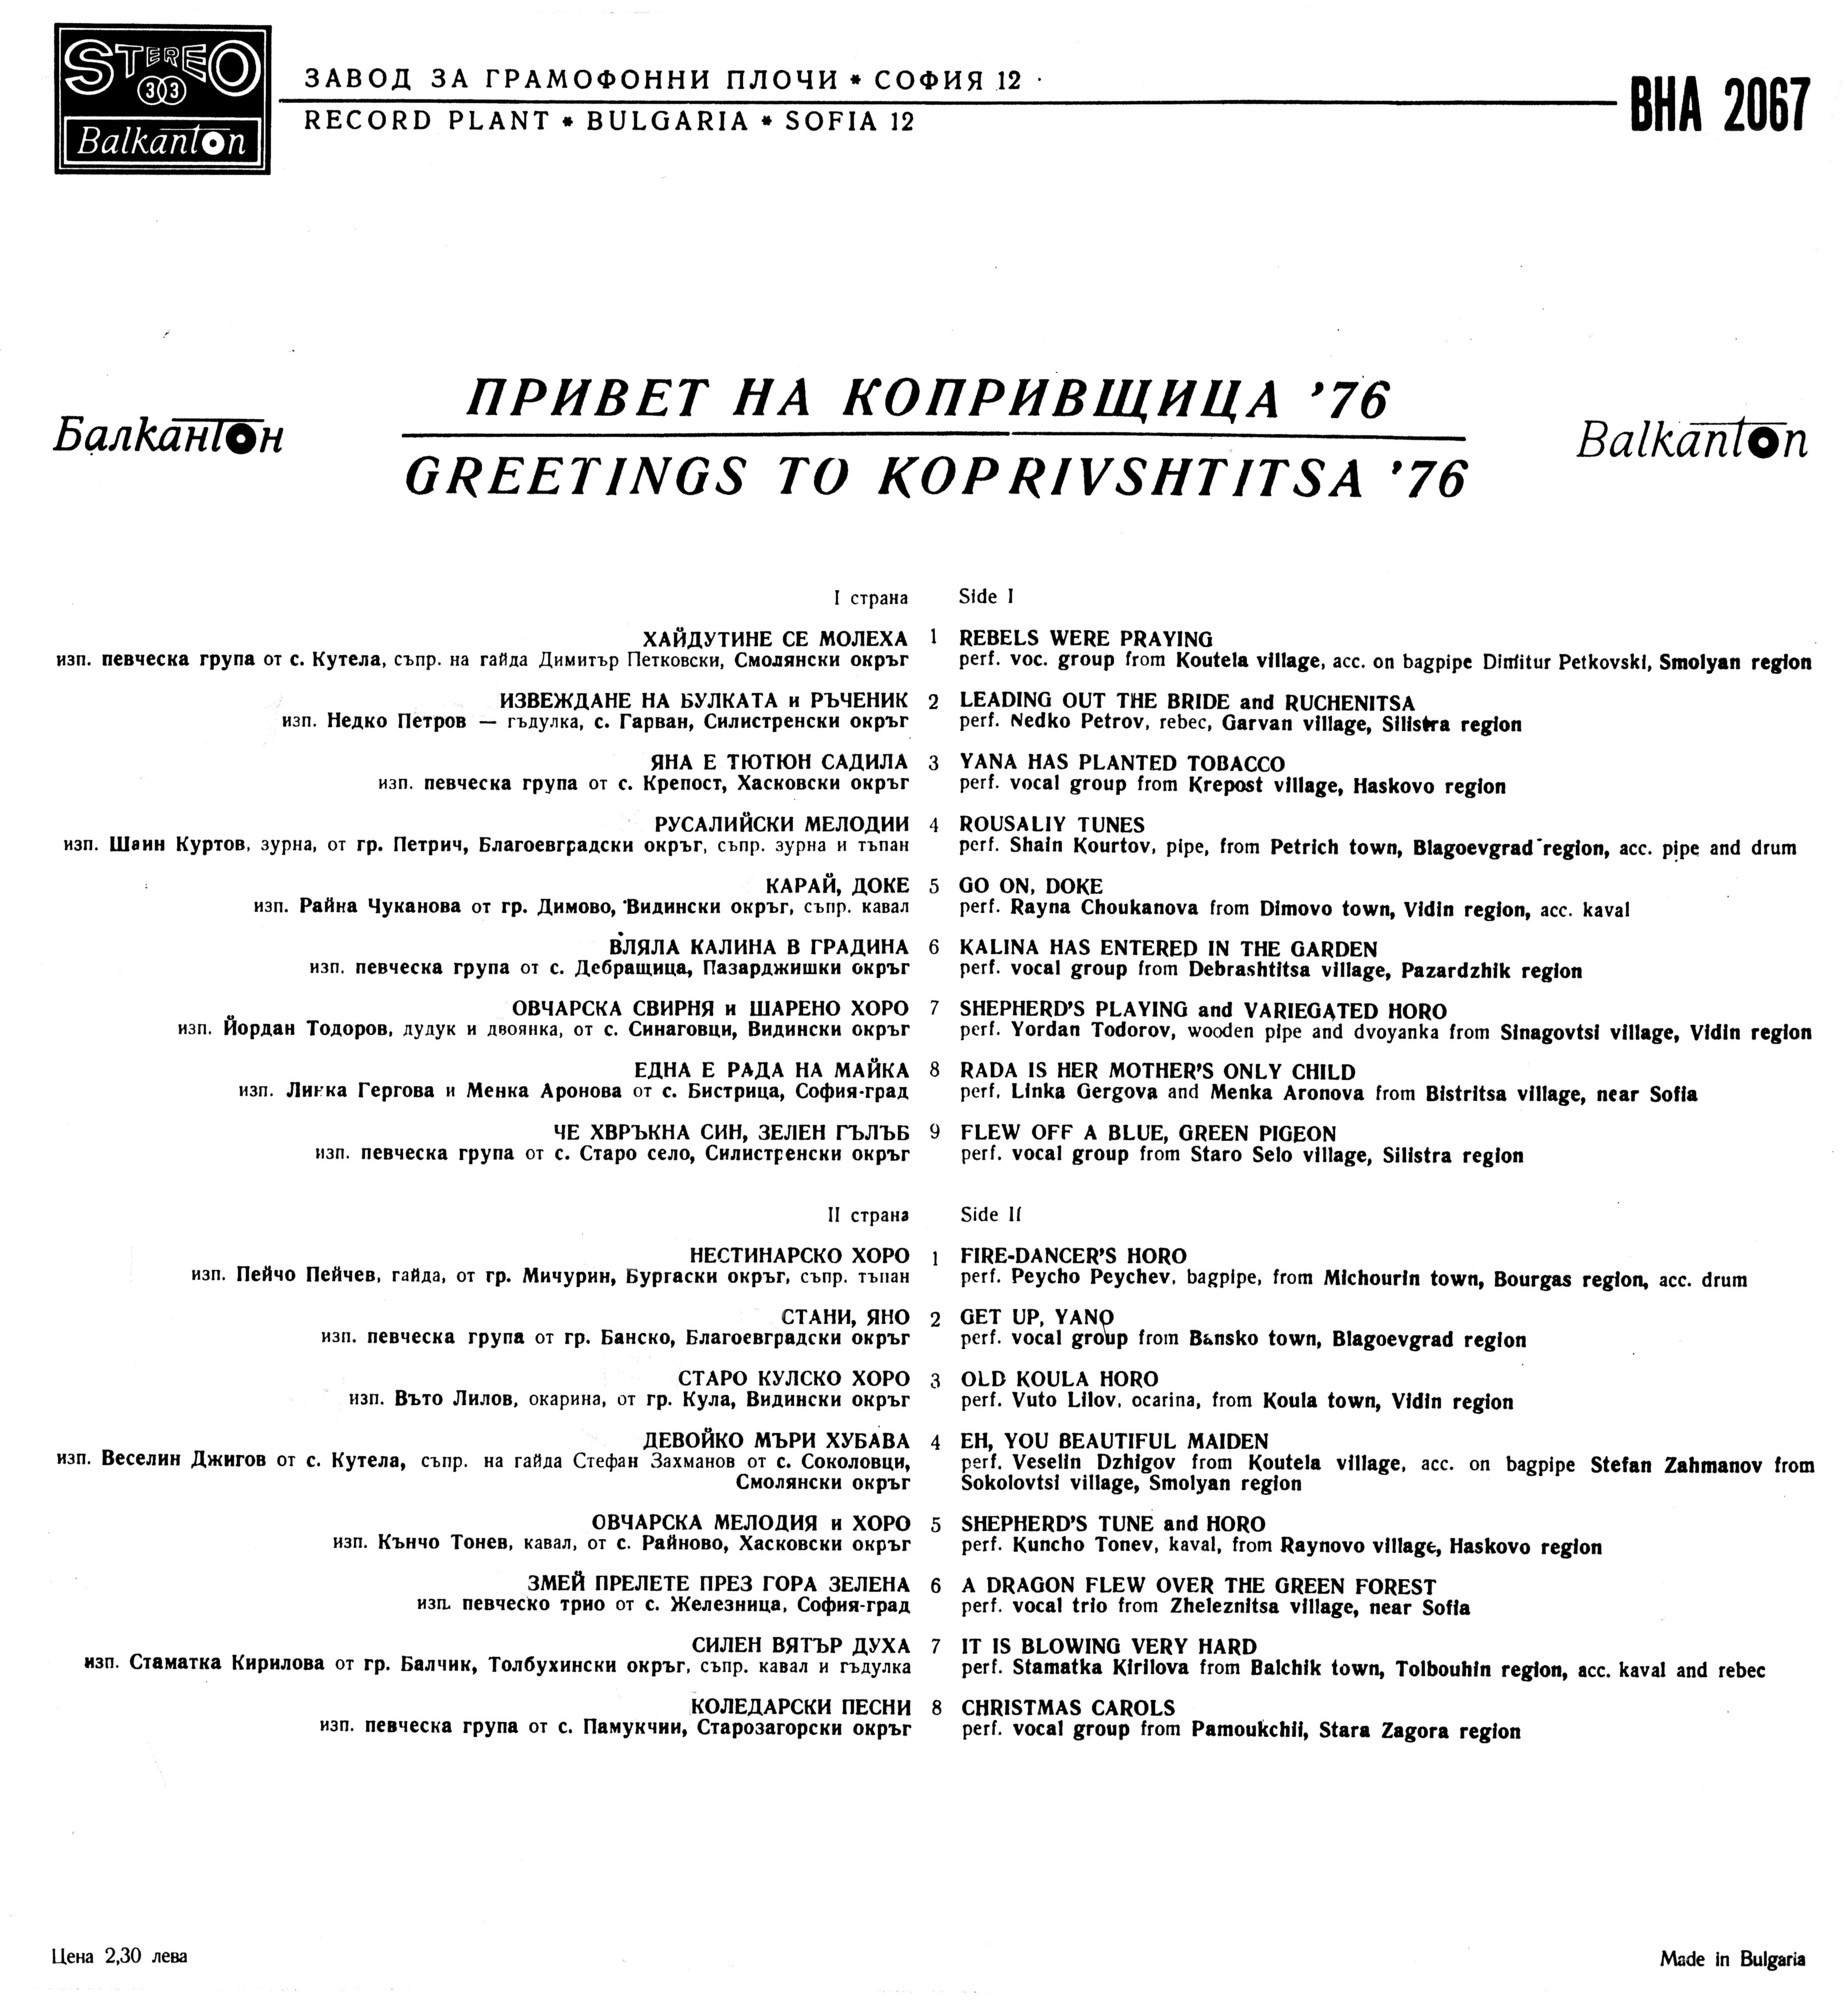 Копривщица-76 - 3 национален събор на народното творчество